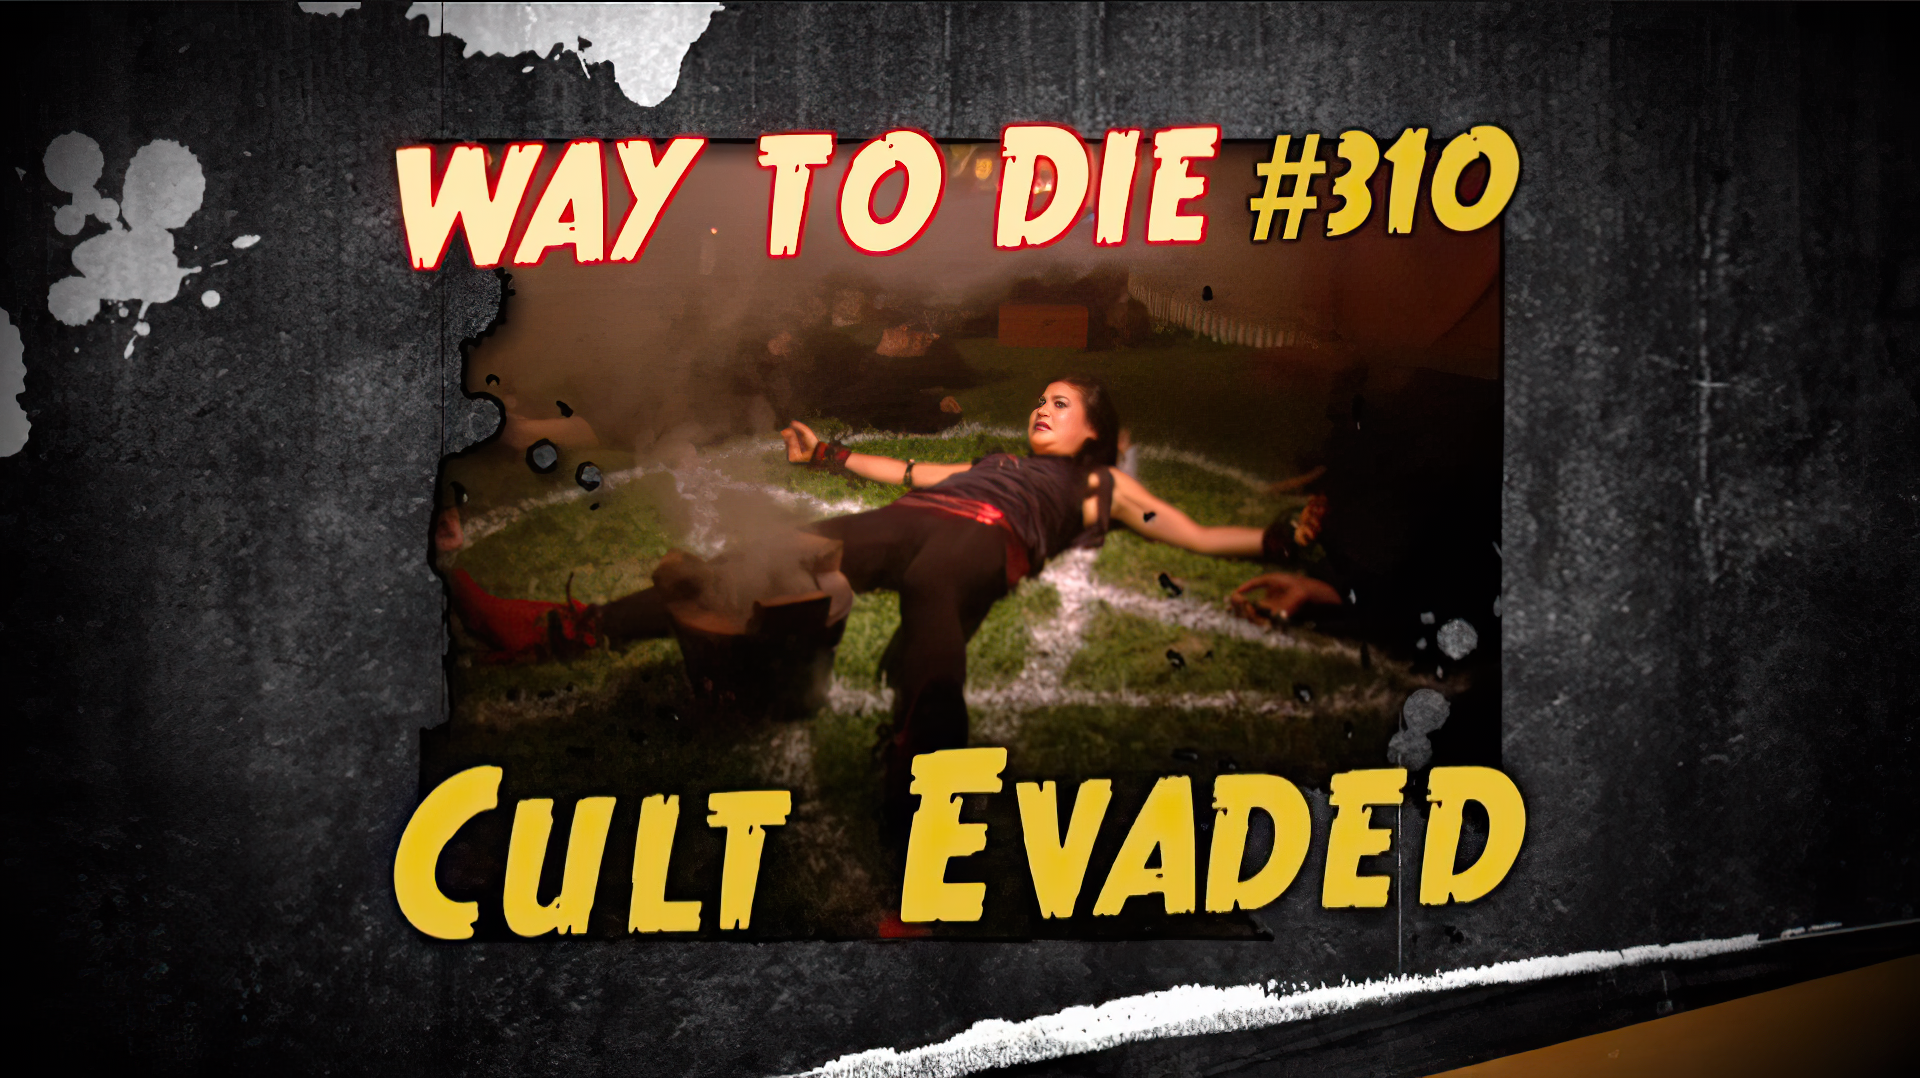 1000 ways to die killdo video online